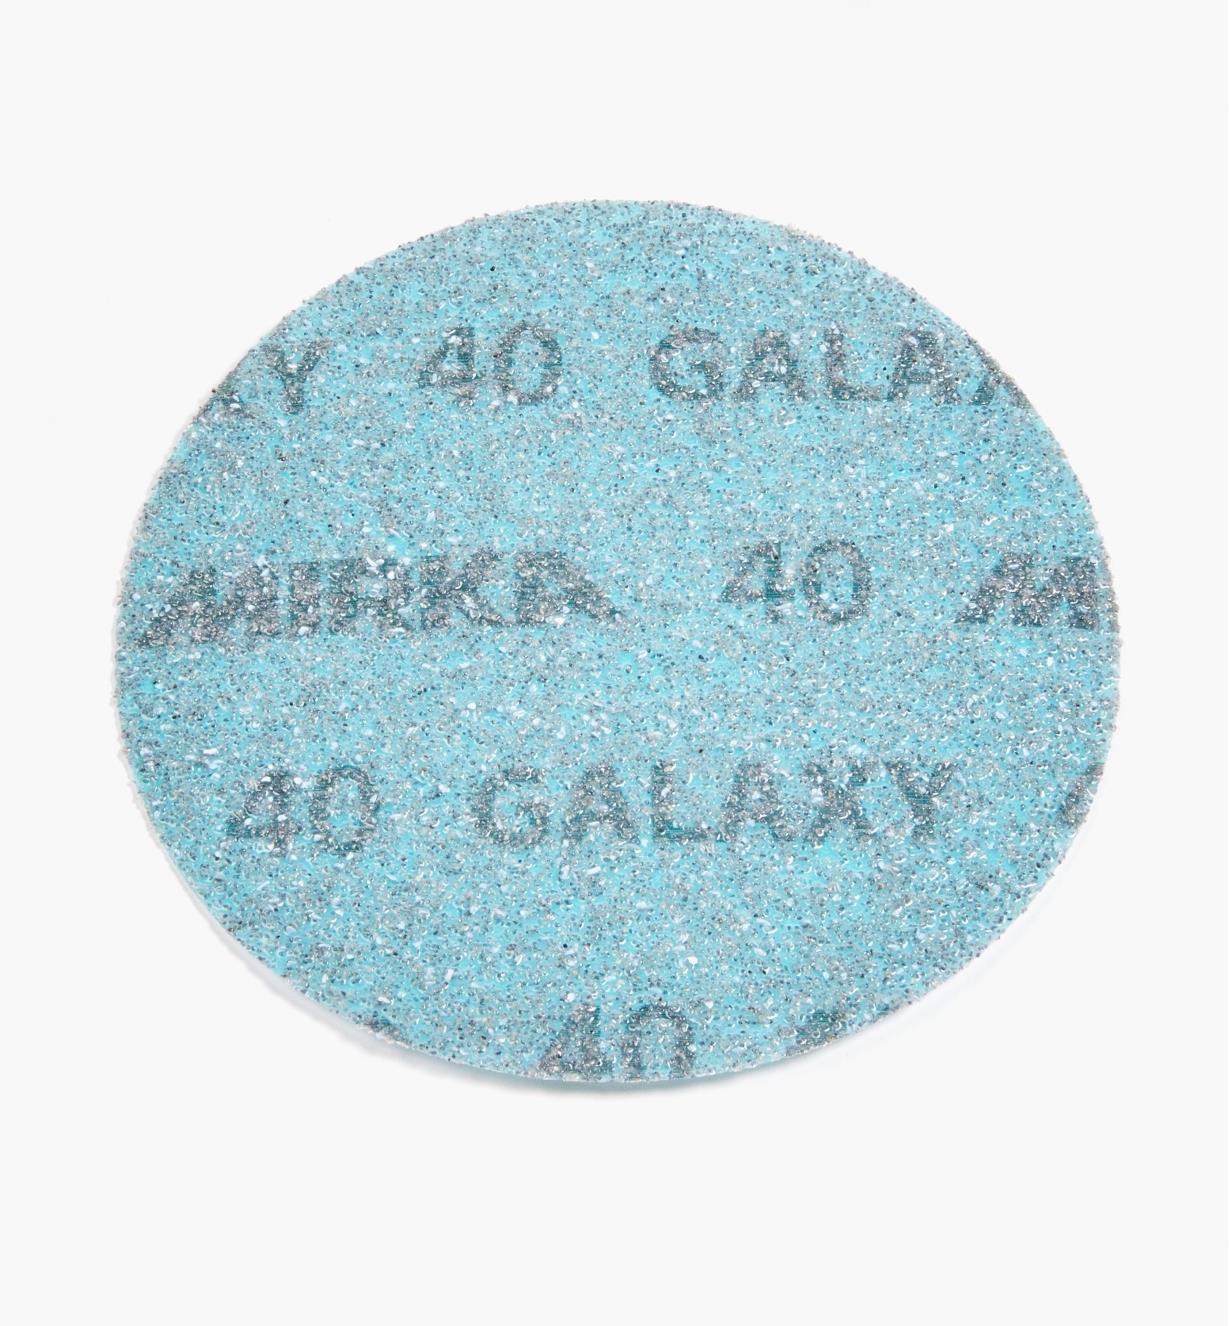 08K1301 - Disque abrasif autoagrippant Galaxy, 5 po, grain 40, l'unité